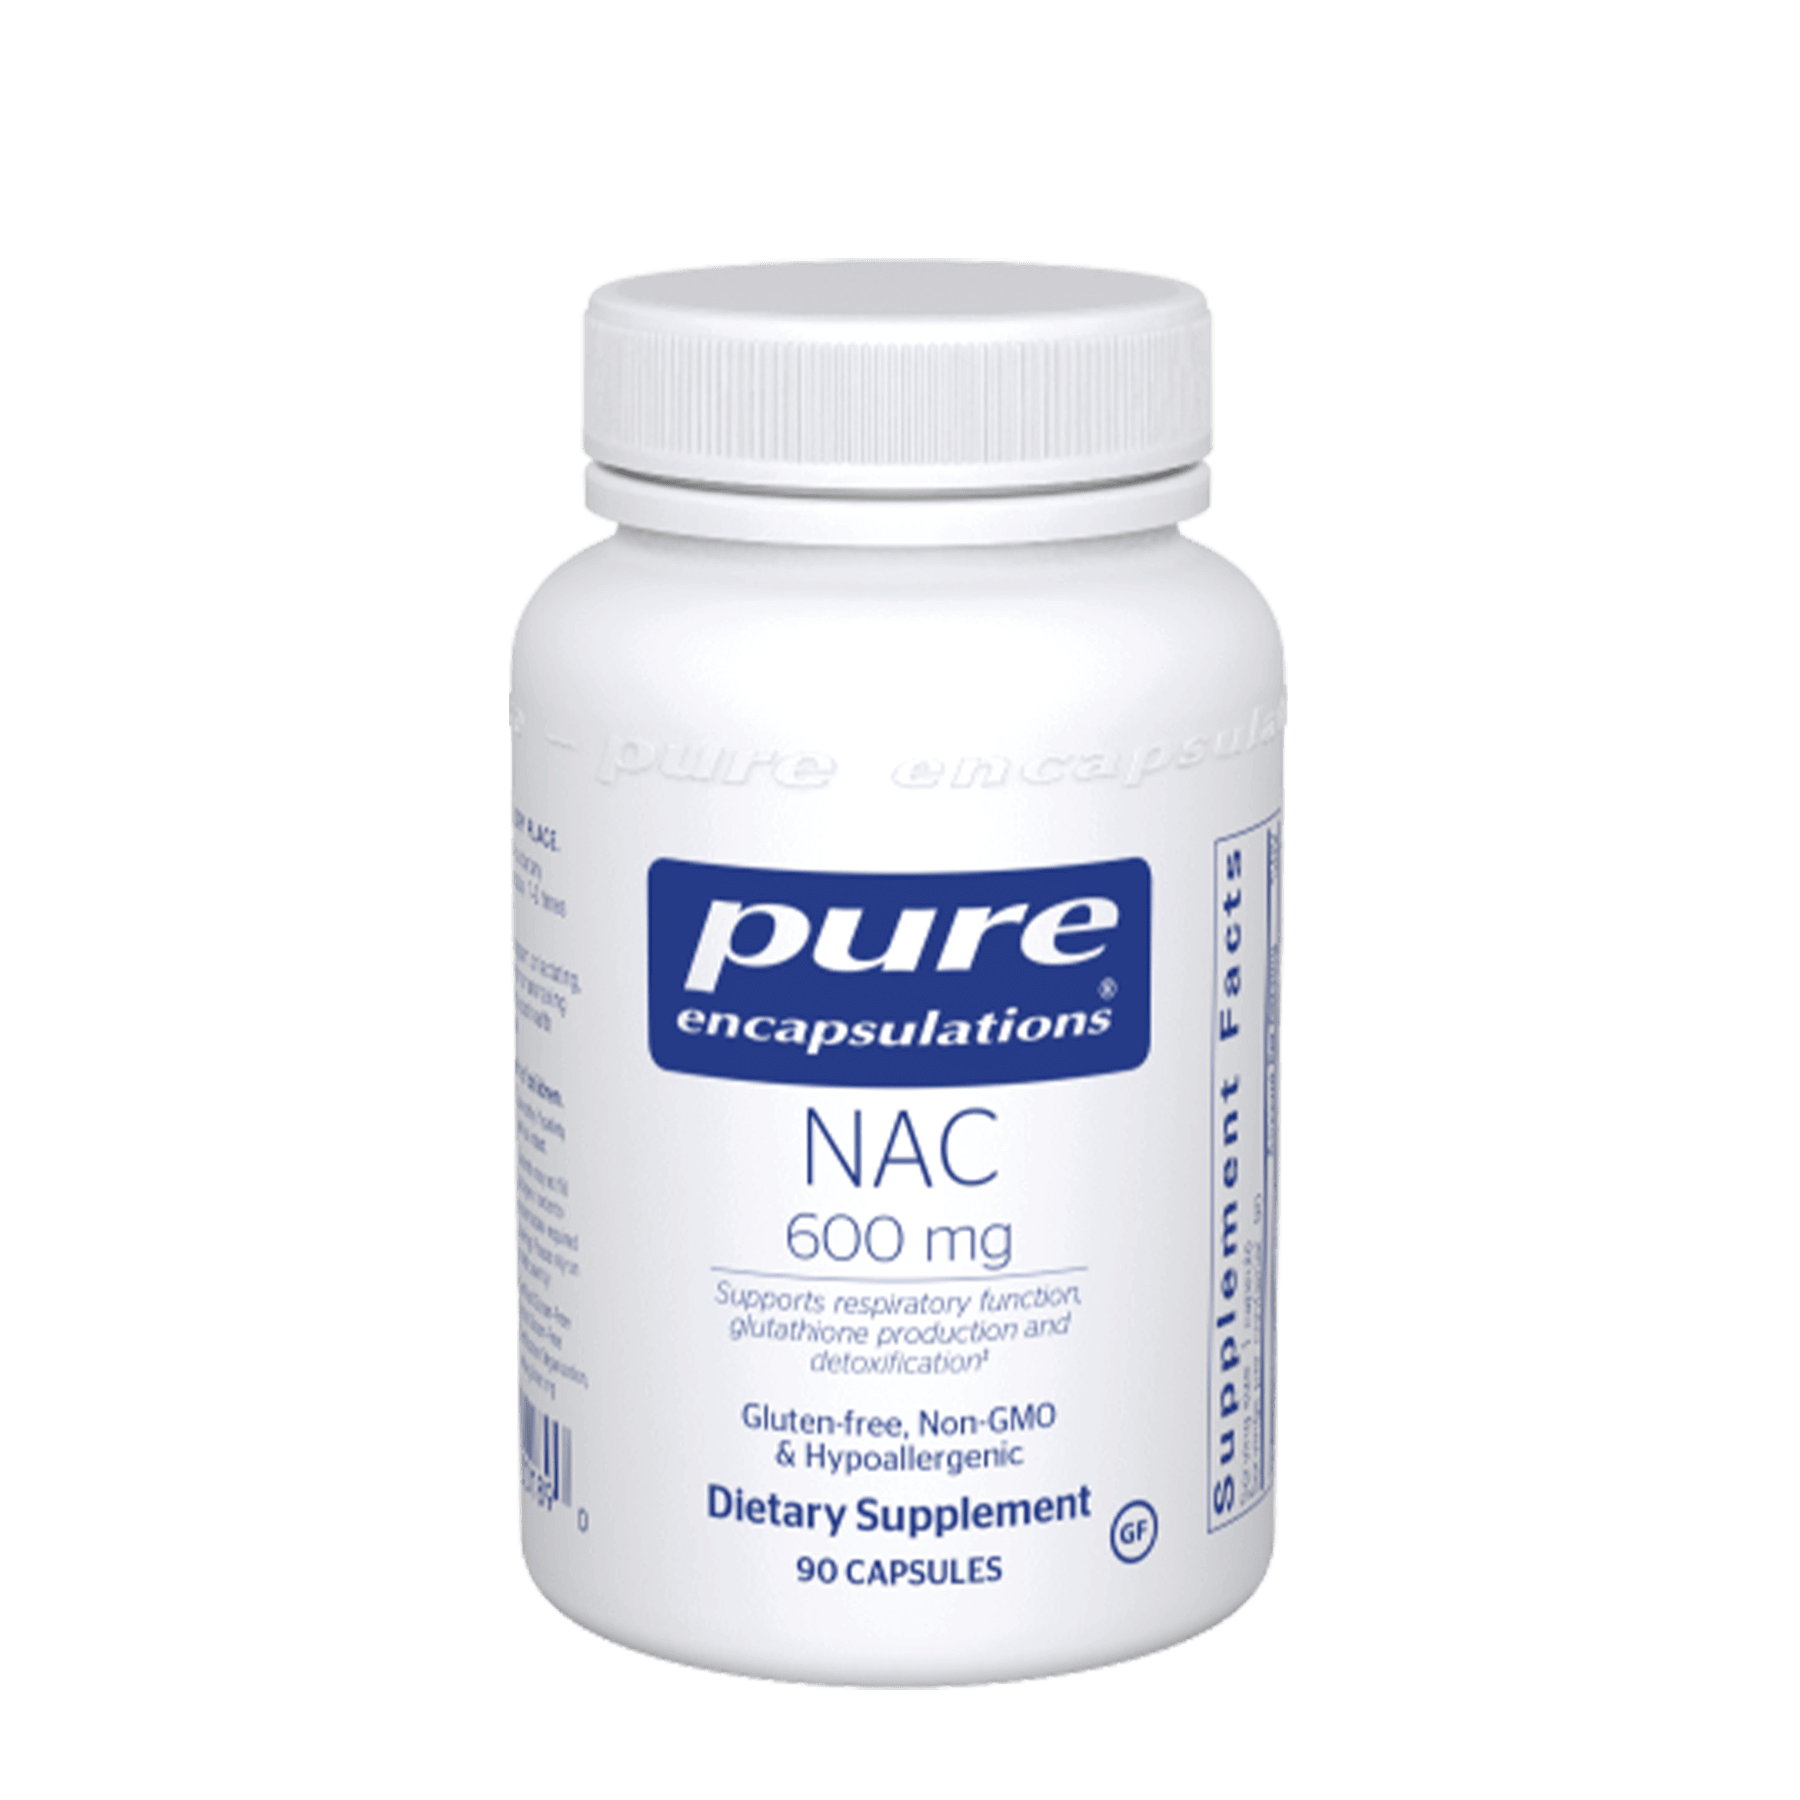 Pure Encapsulations NAC 600 mg Capsules